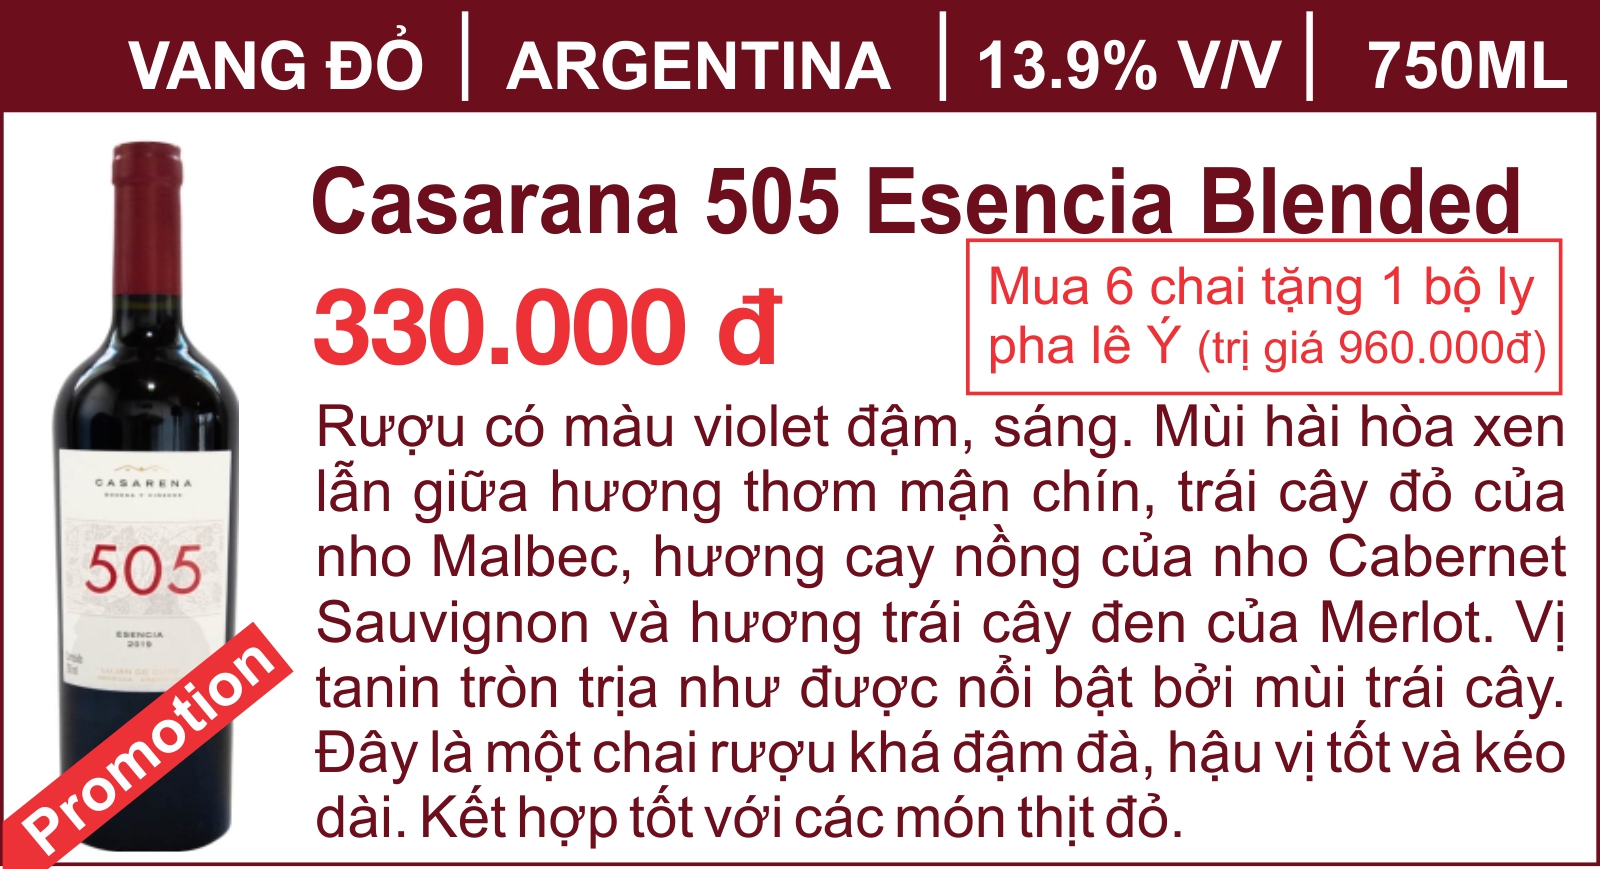 Casarana 505 Esencia Blended